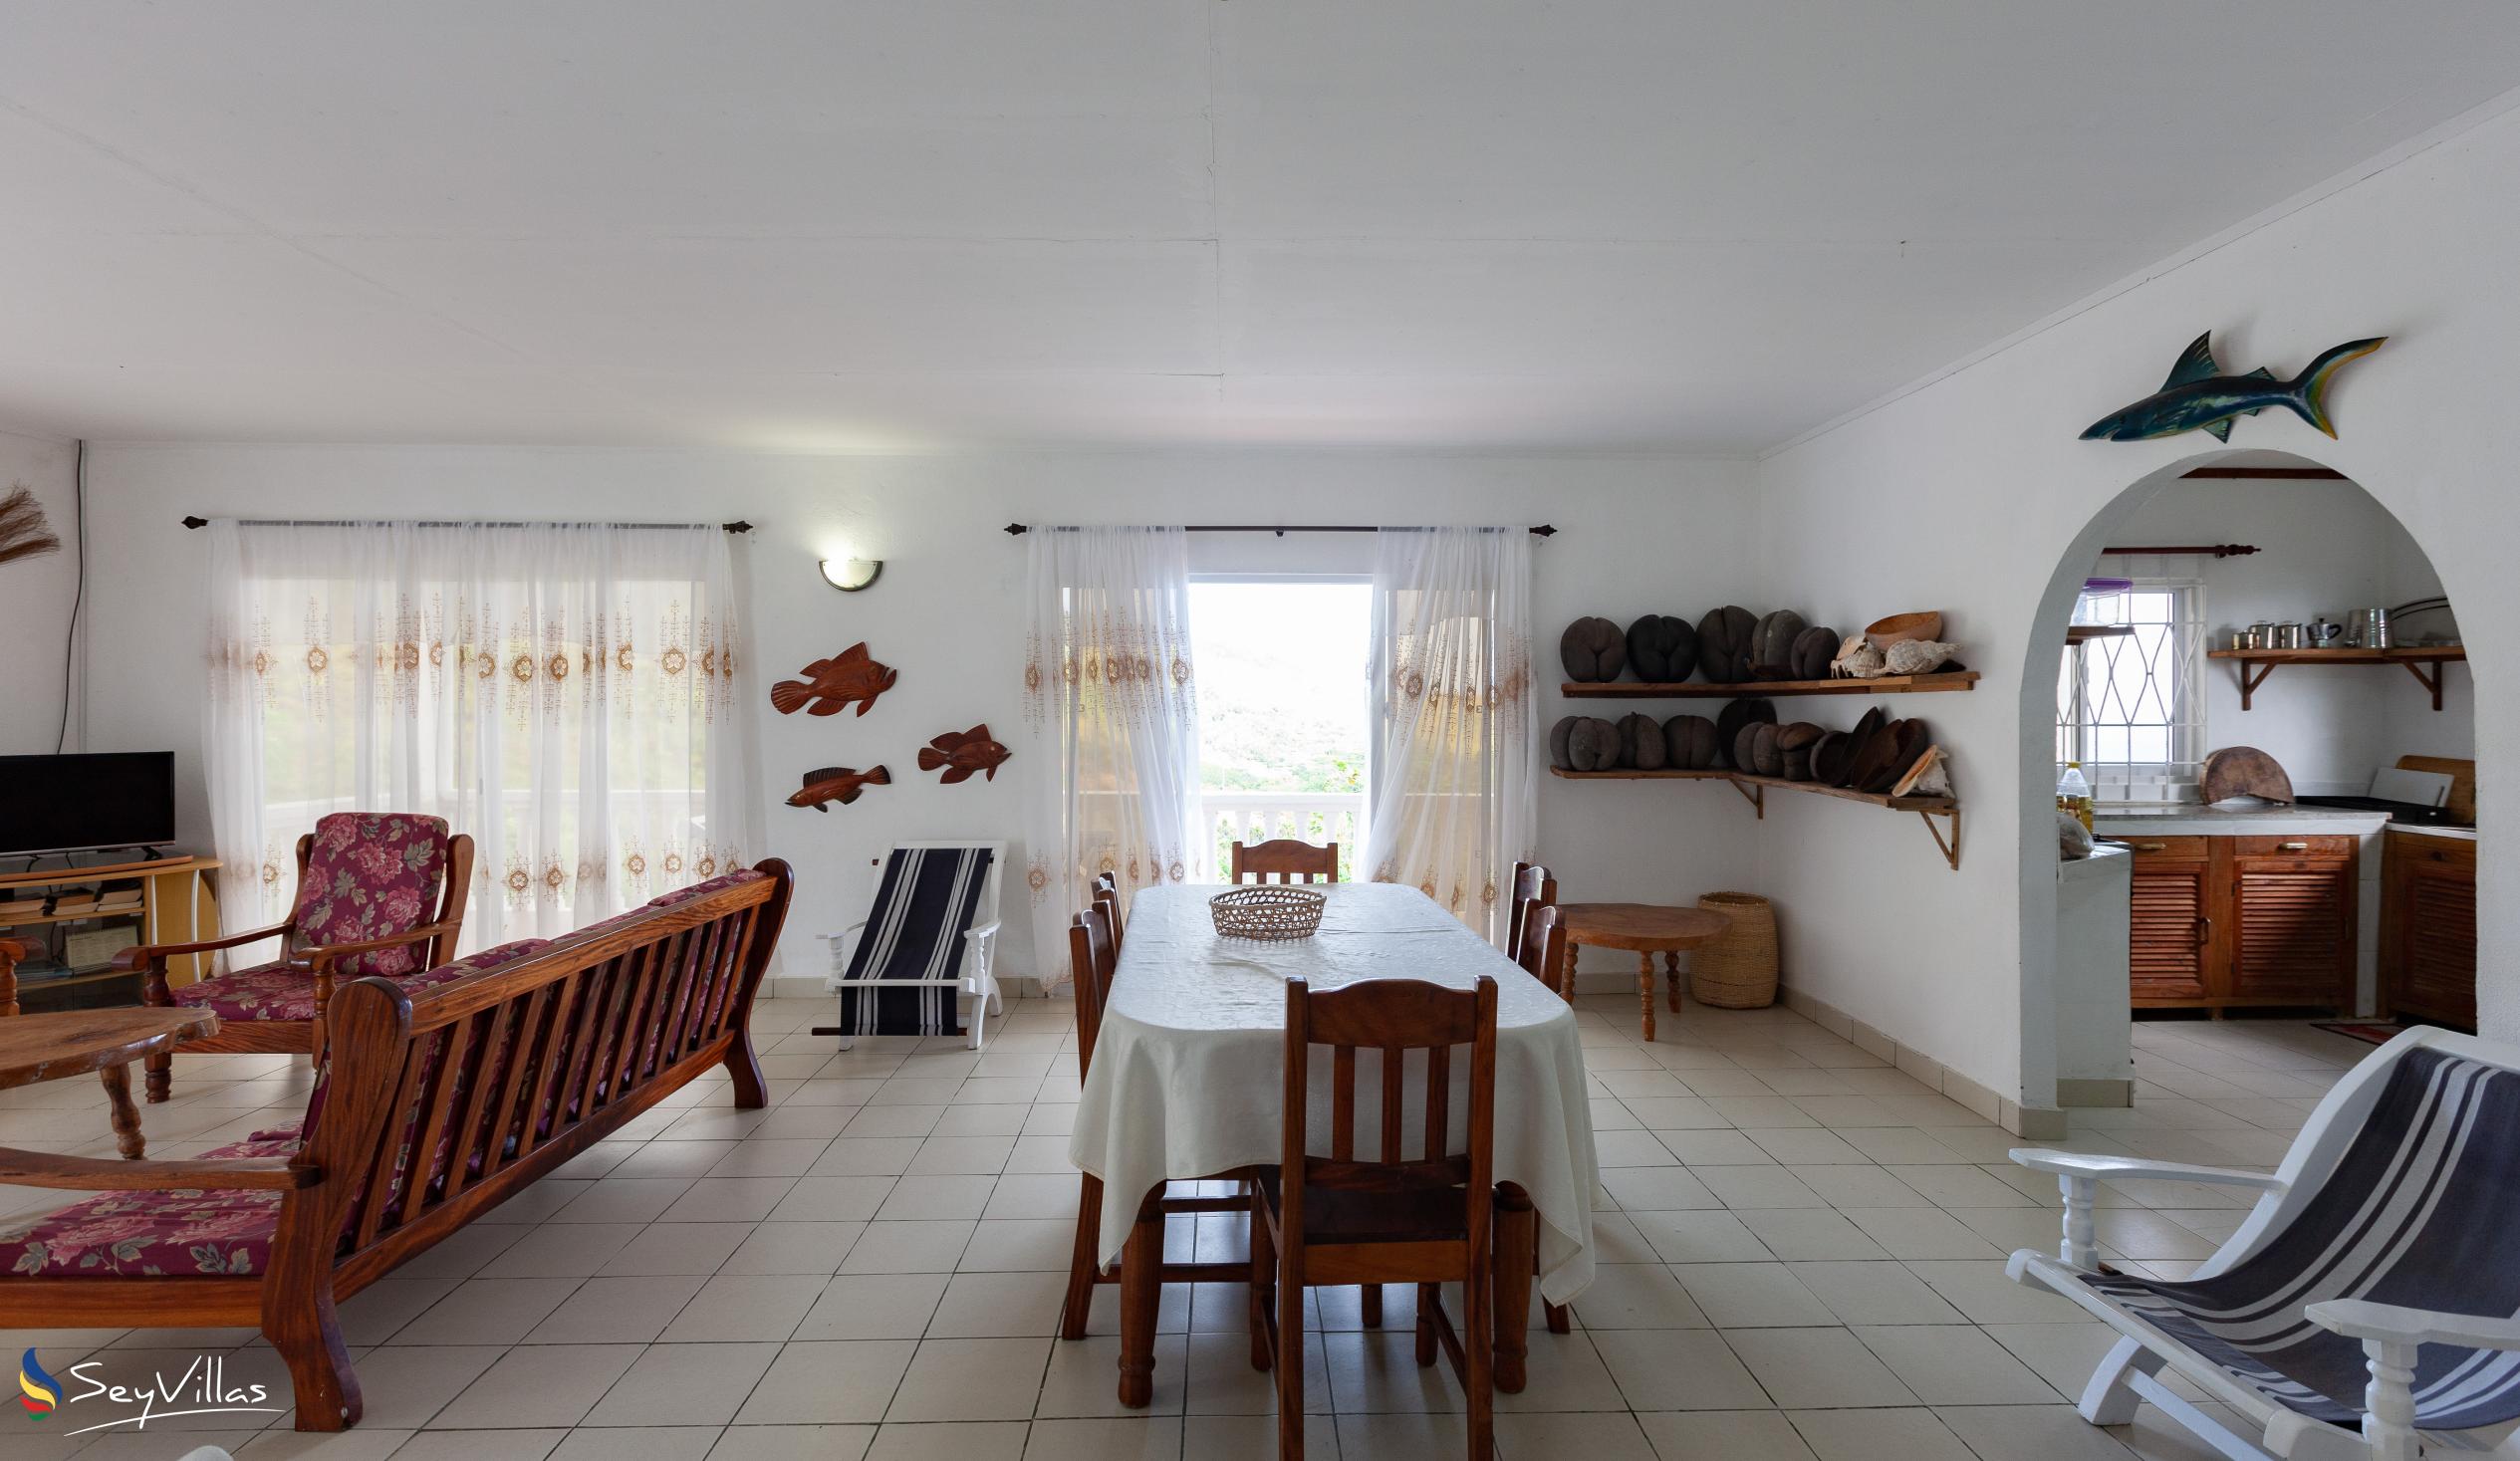 Photo 31: Maison du Soleil - Indoor area - Praslin (Seychelles)